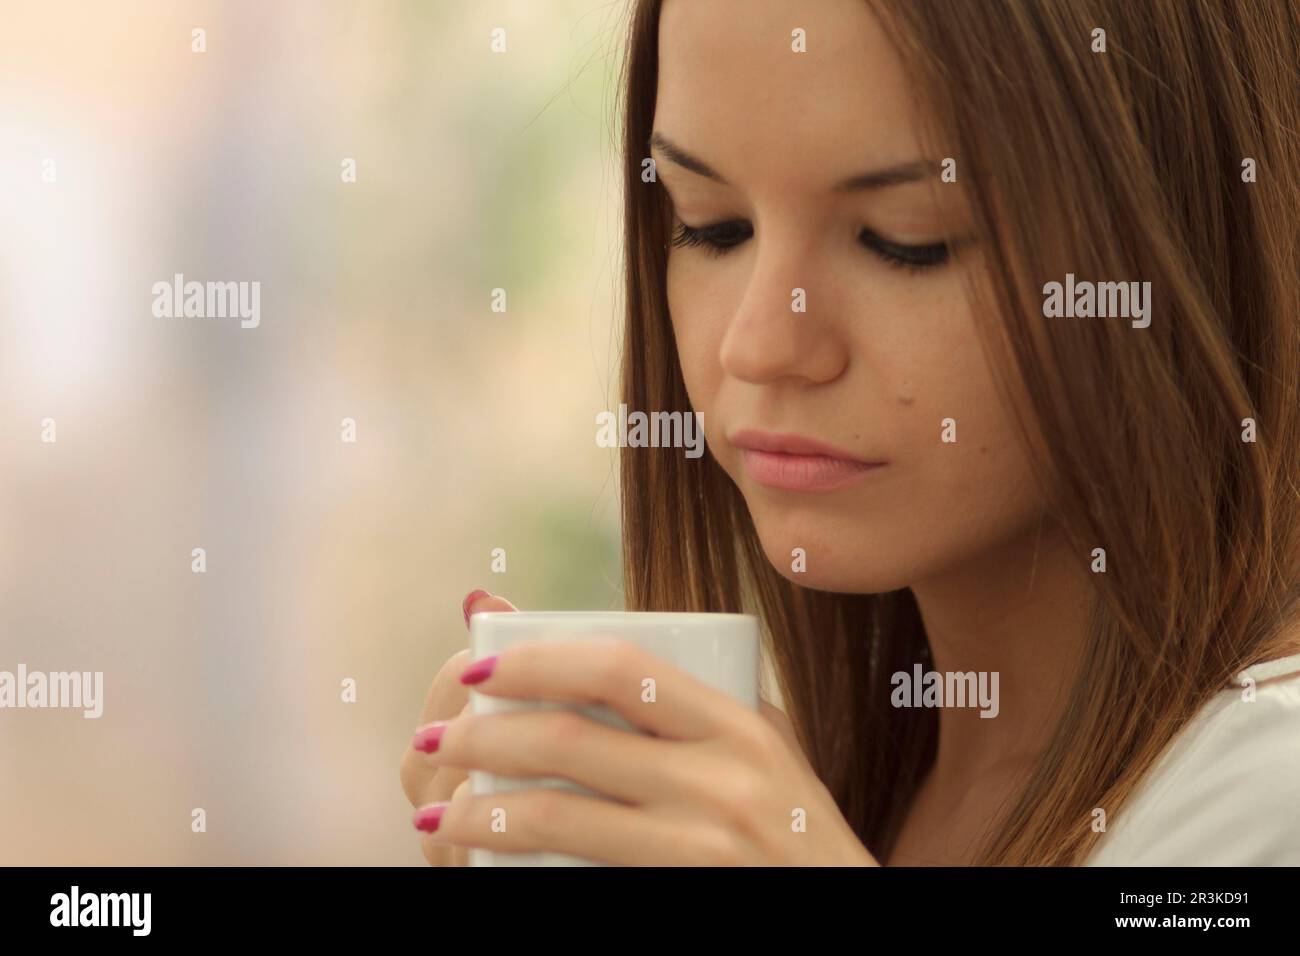 Mujer joven bebiendo de una taza, islas baleares, Espagne. Banque D'Images